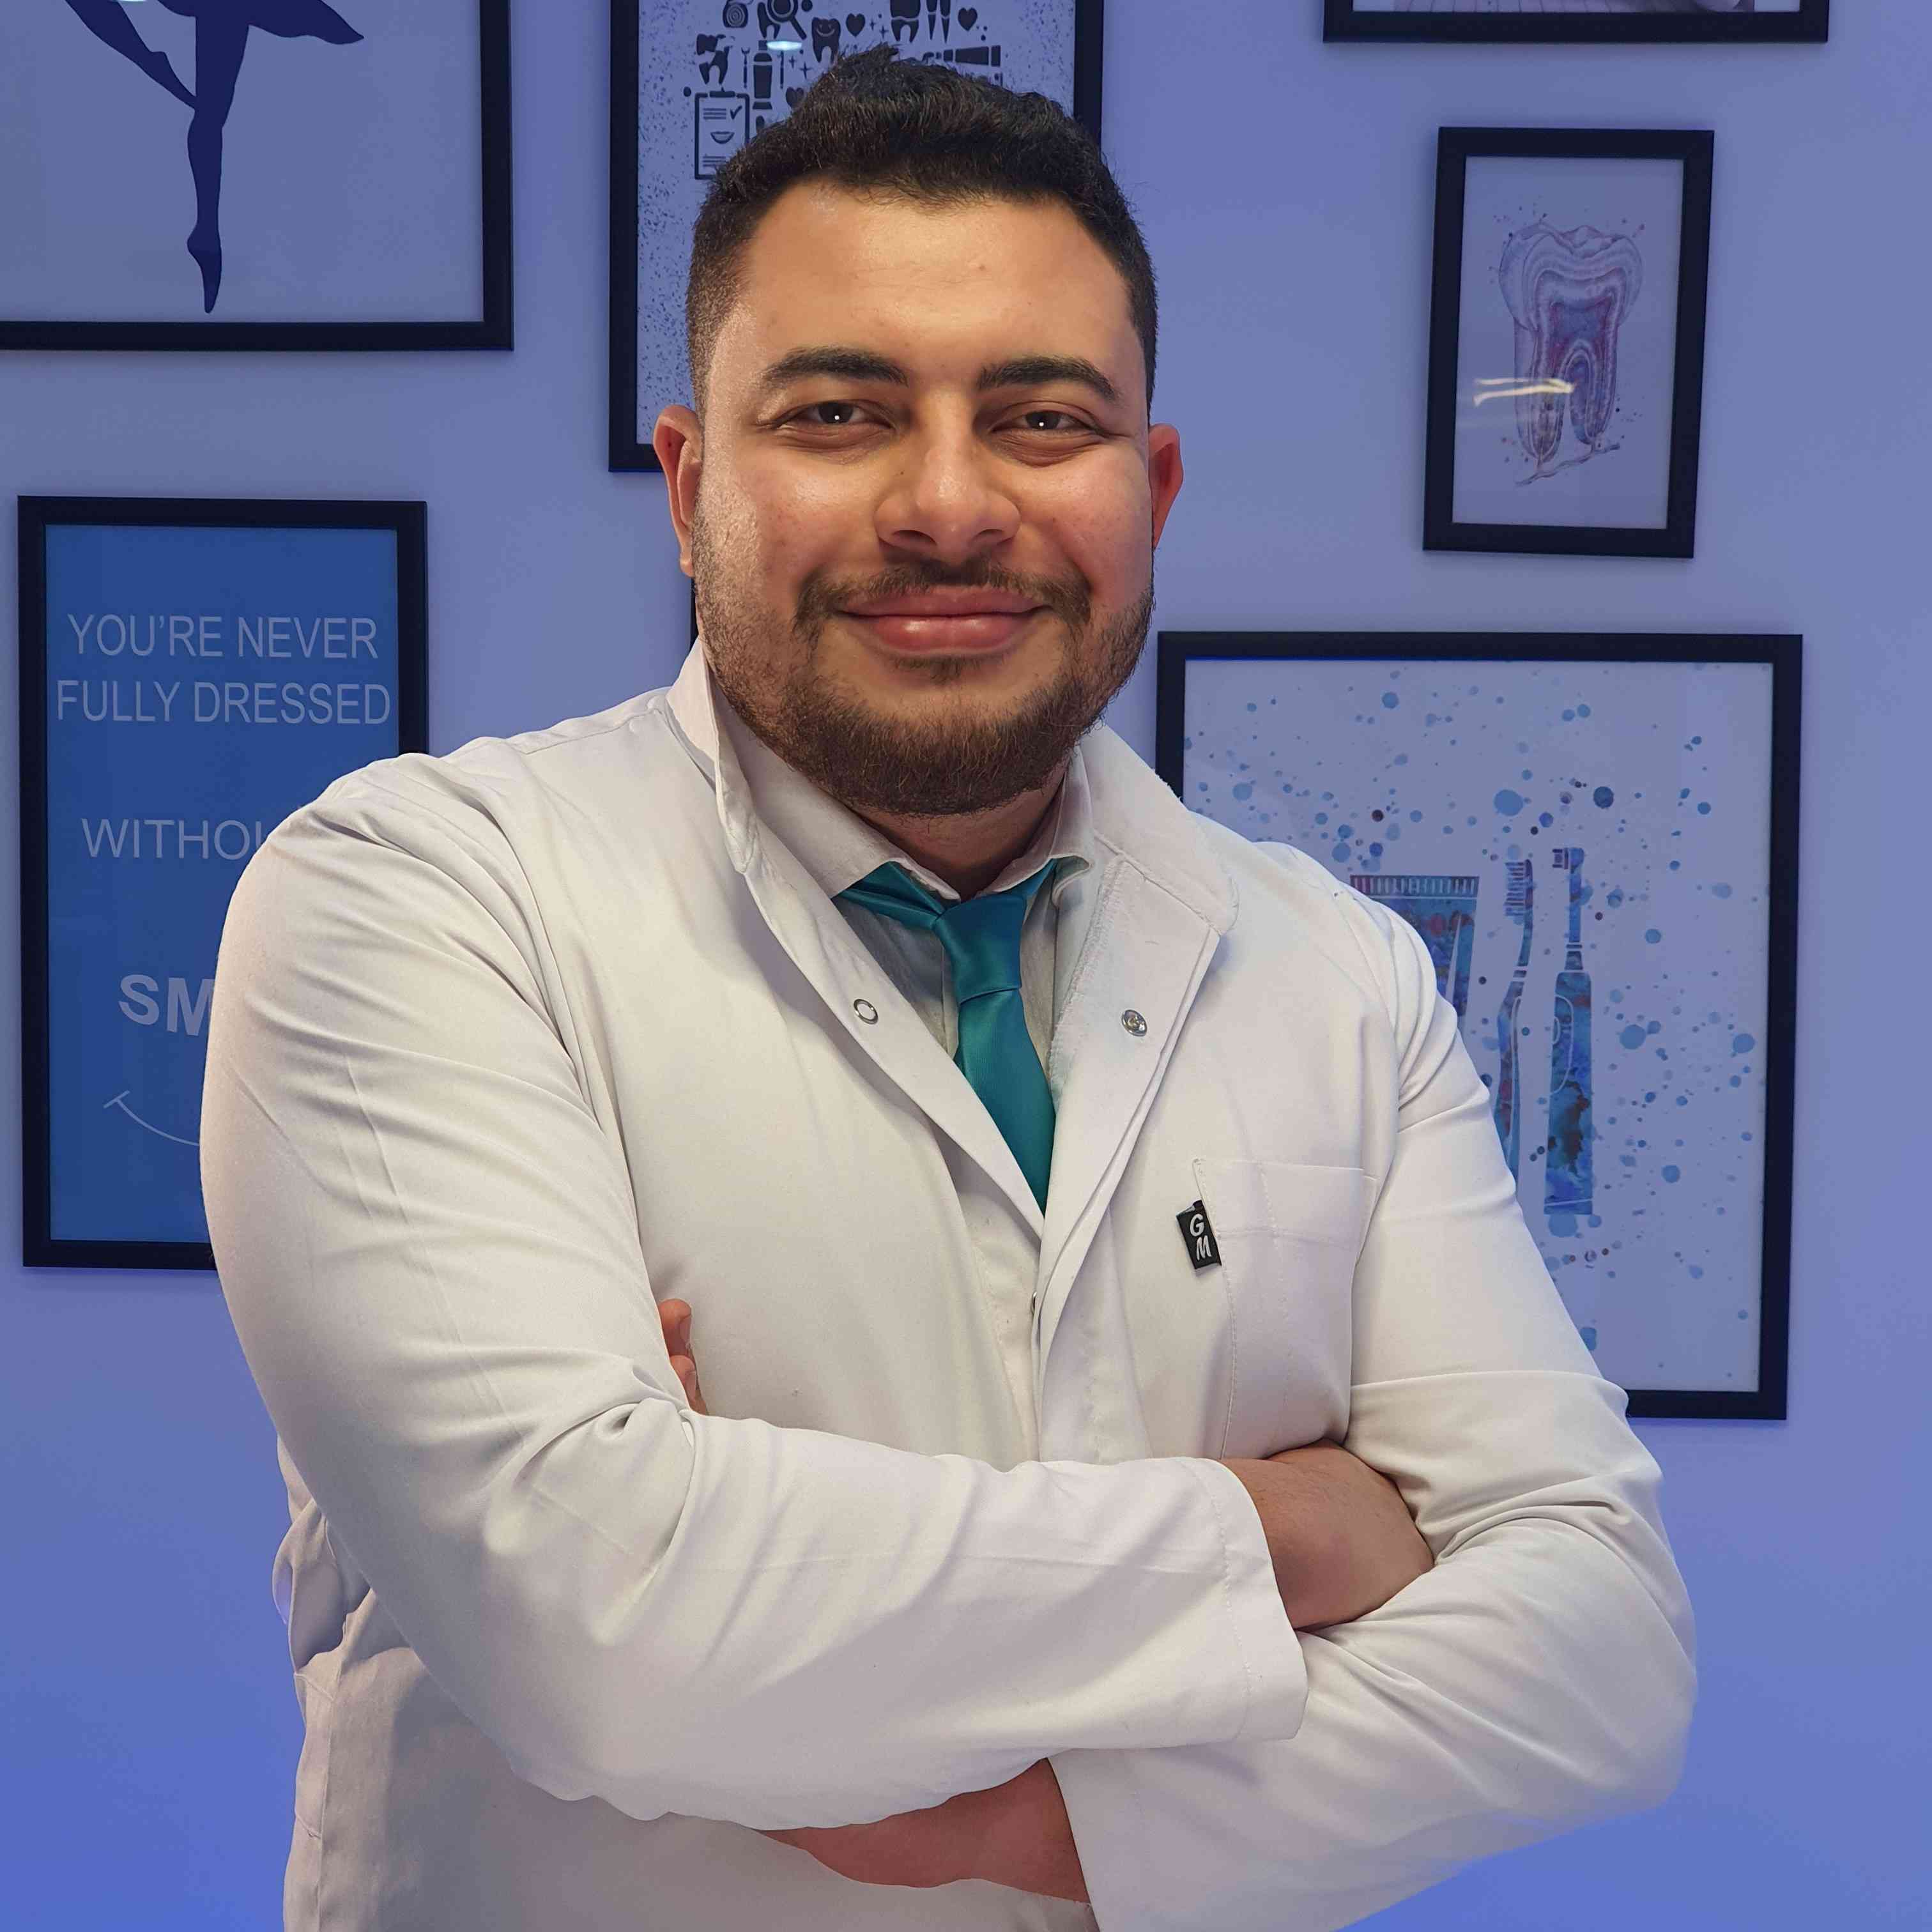 Dr. Adel Fathalla Ali